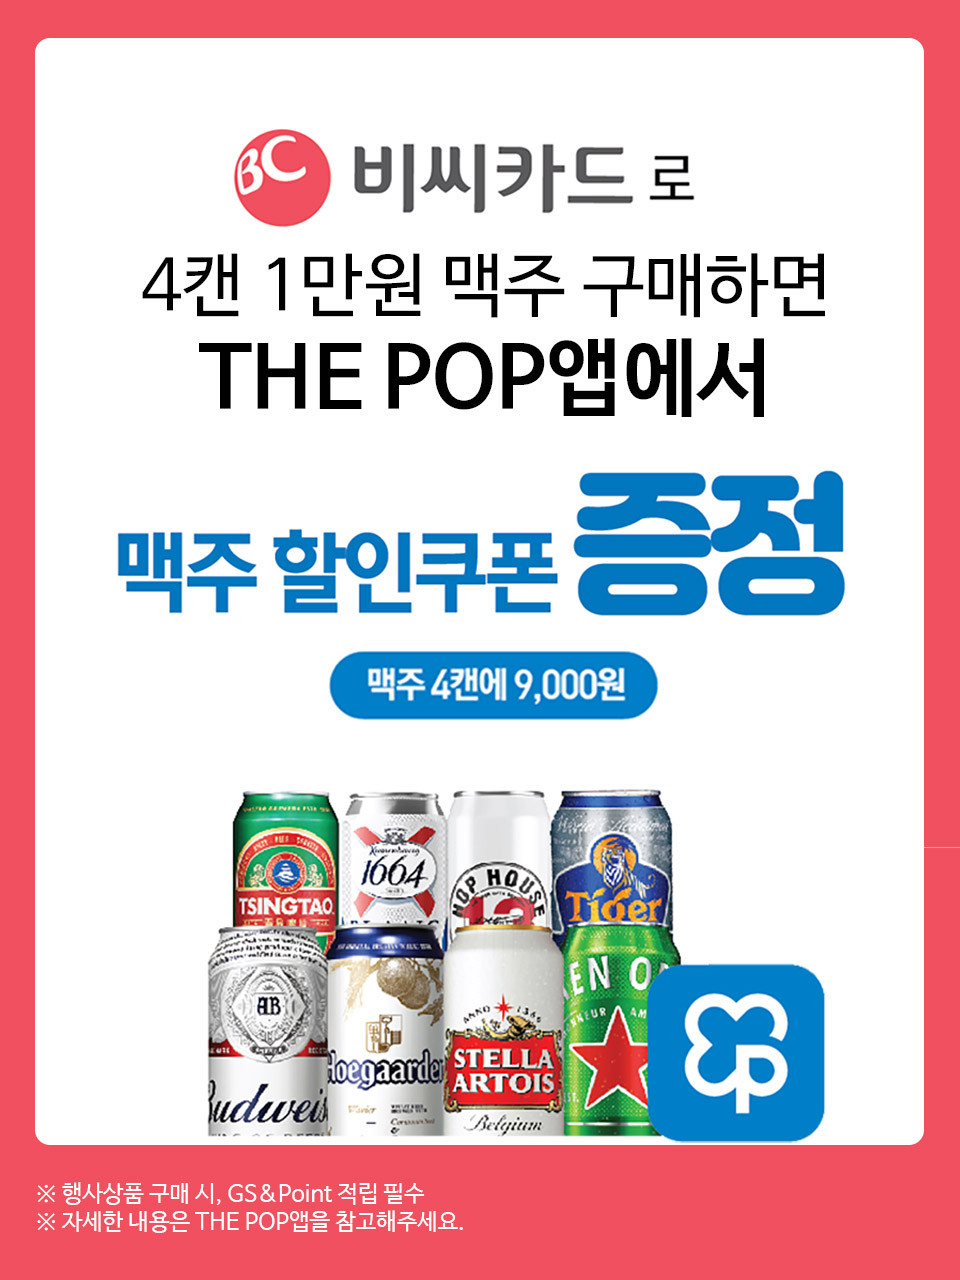 비씨카드로 4캔1만원 맥주 구매 시 THE POP앱에서 할인쿠폰 증정! - 하단 상세설명